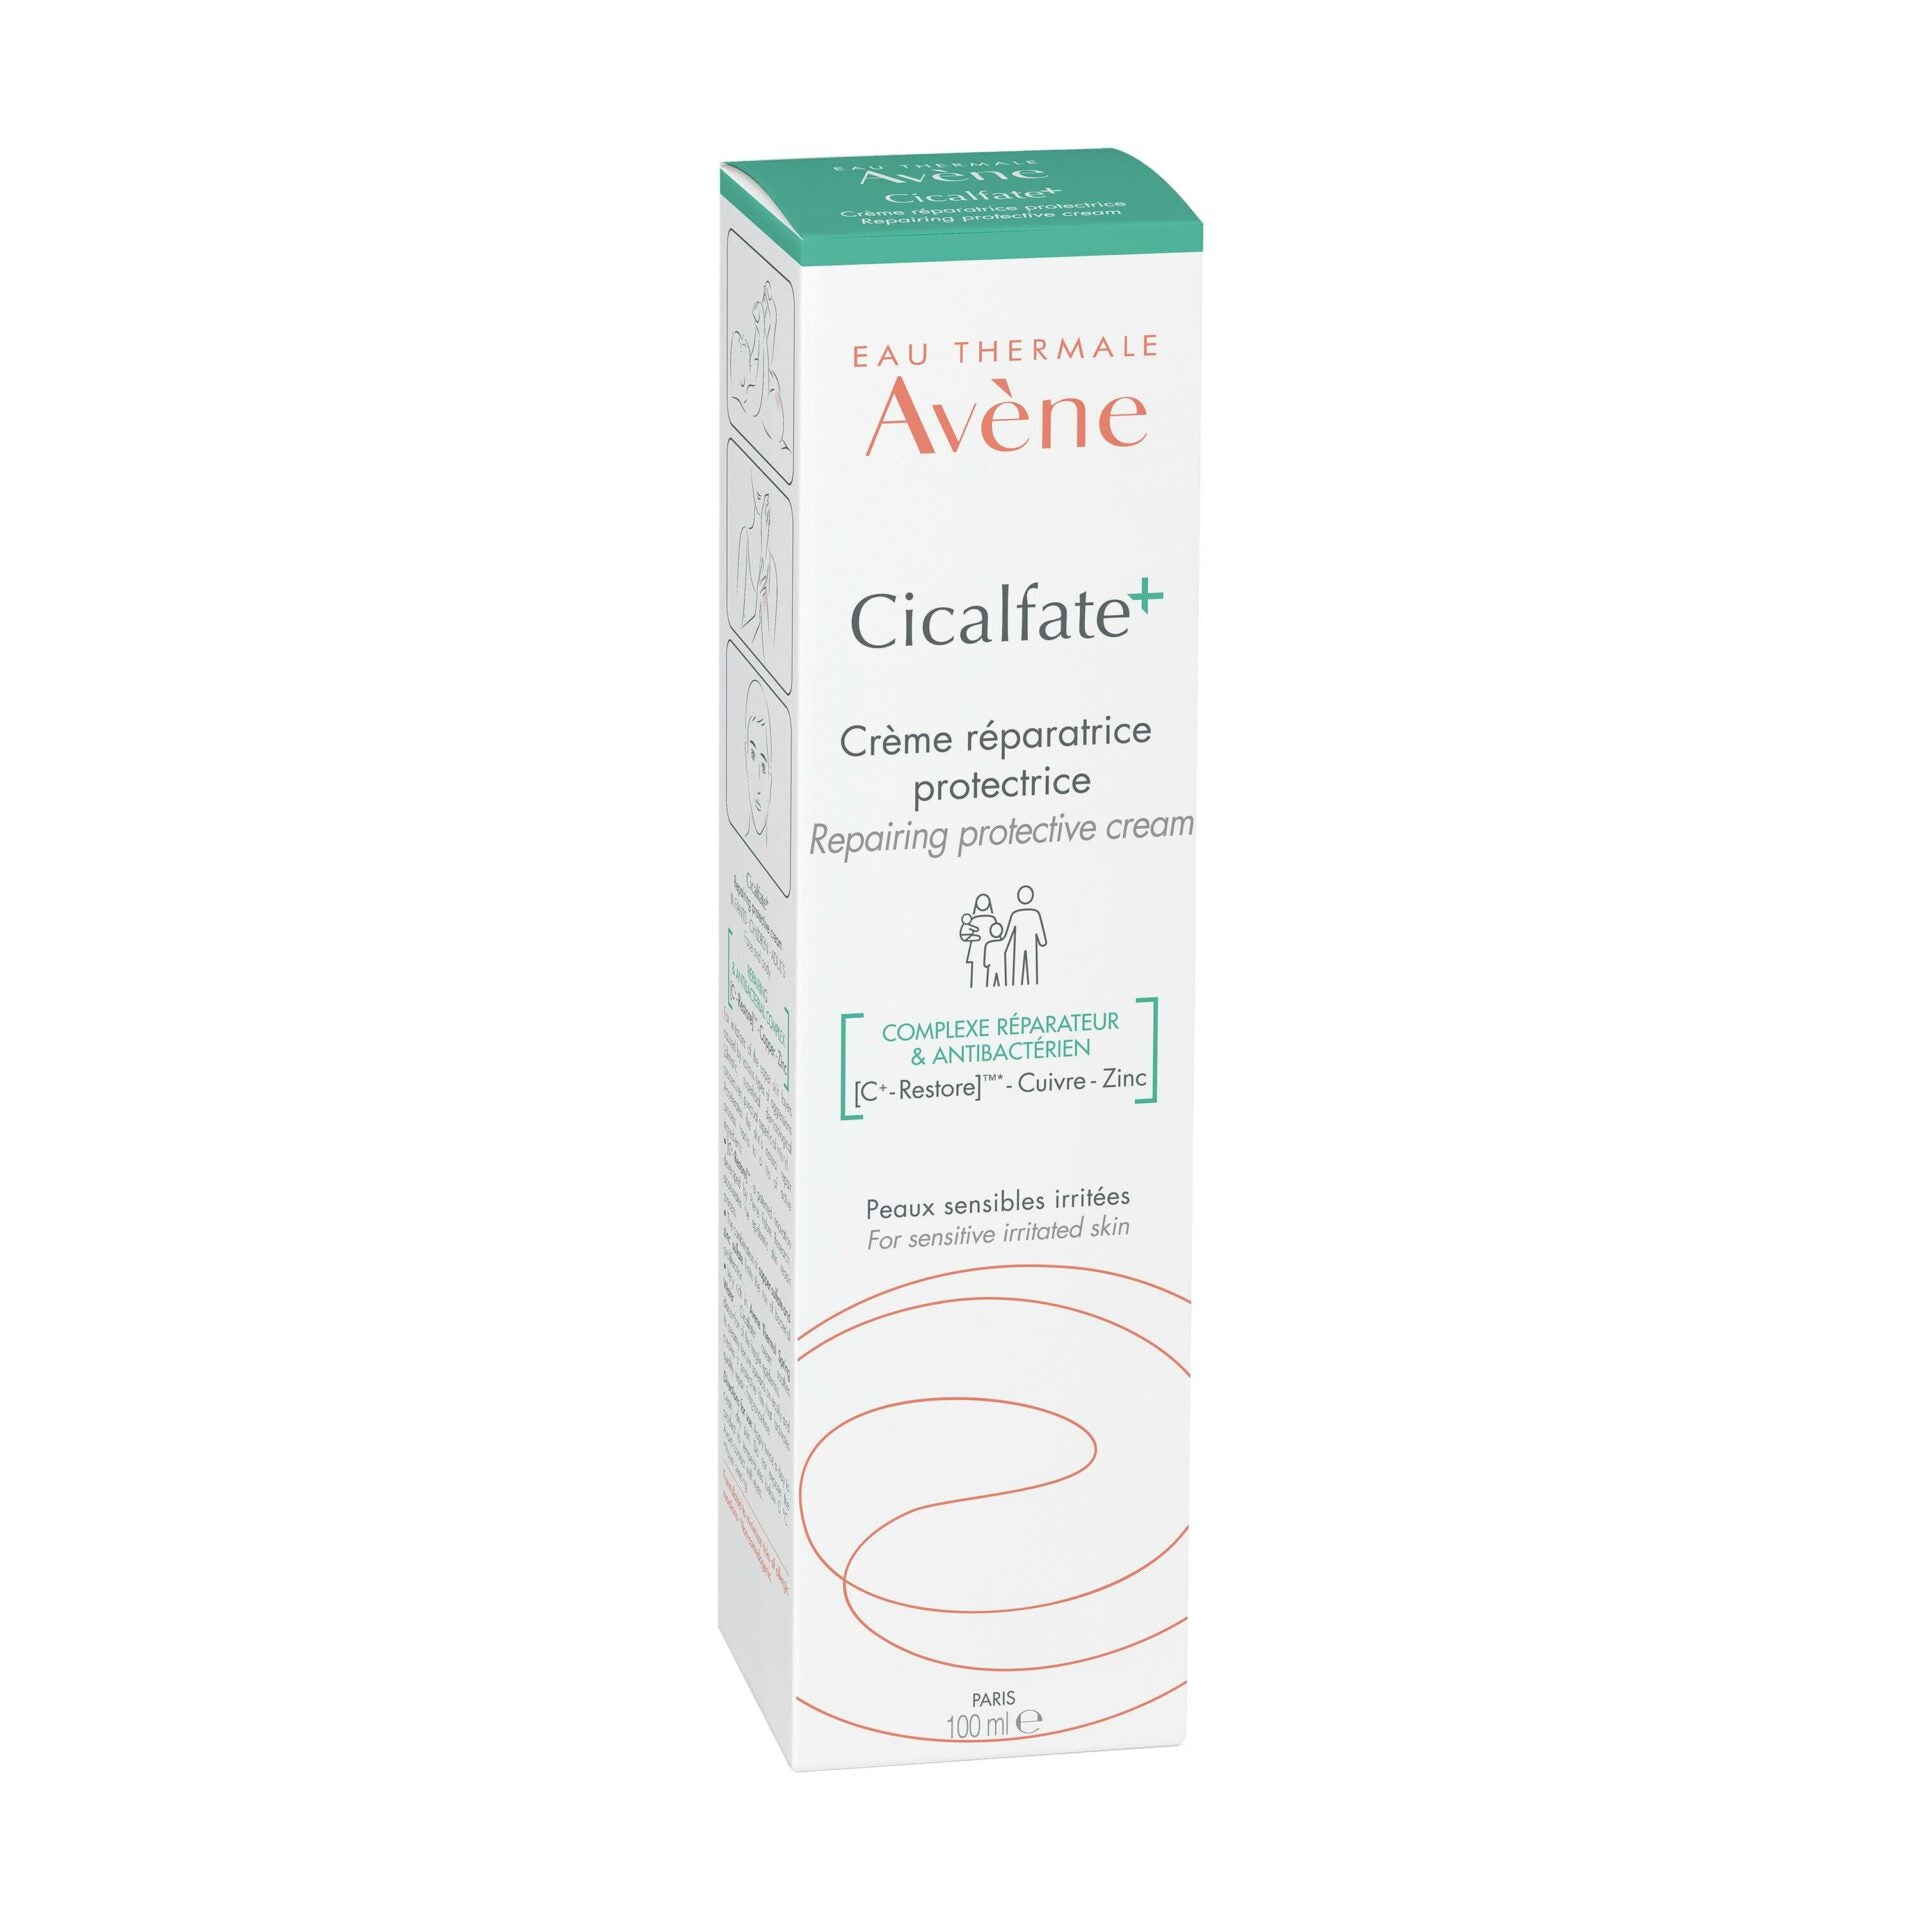 Avène - Cicalfate+ Crème réparatrice protectrice 100 ml = eau thermale format voyage OFFERT